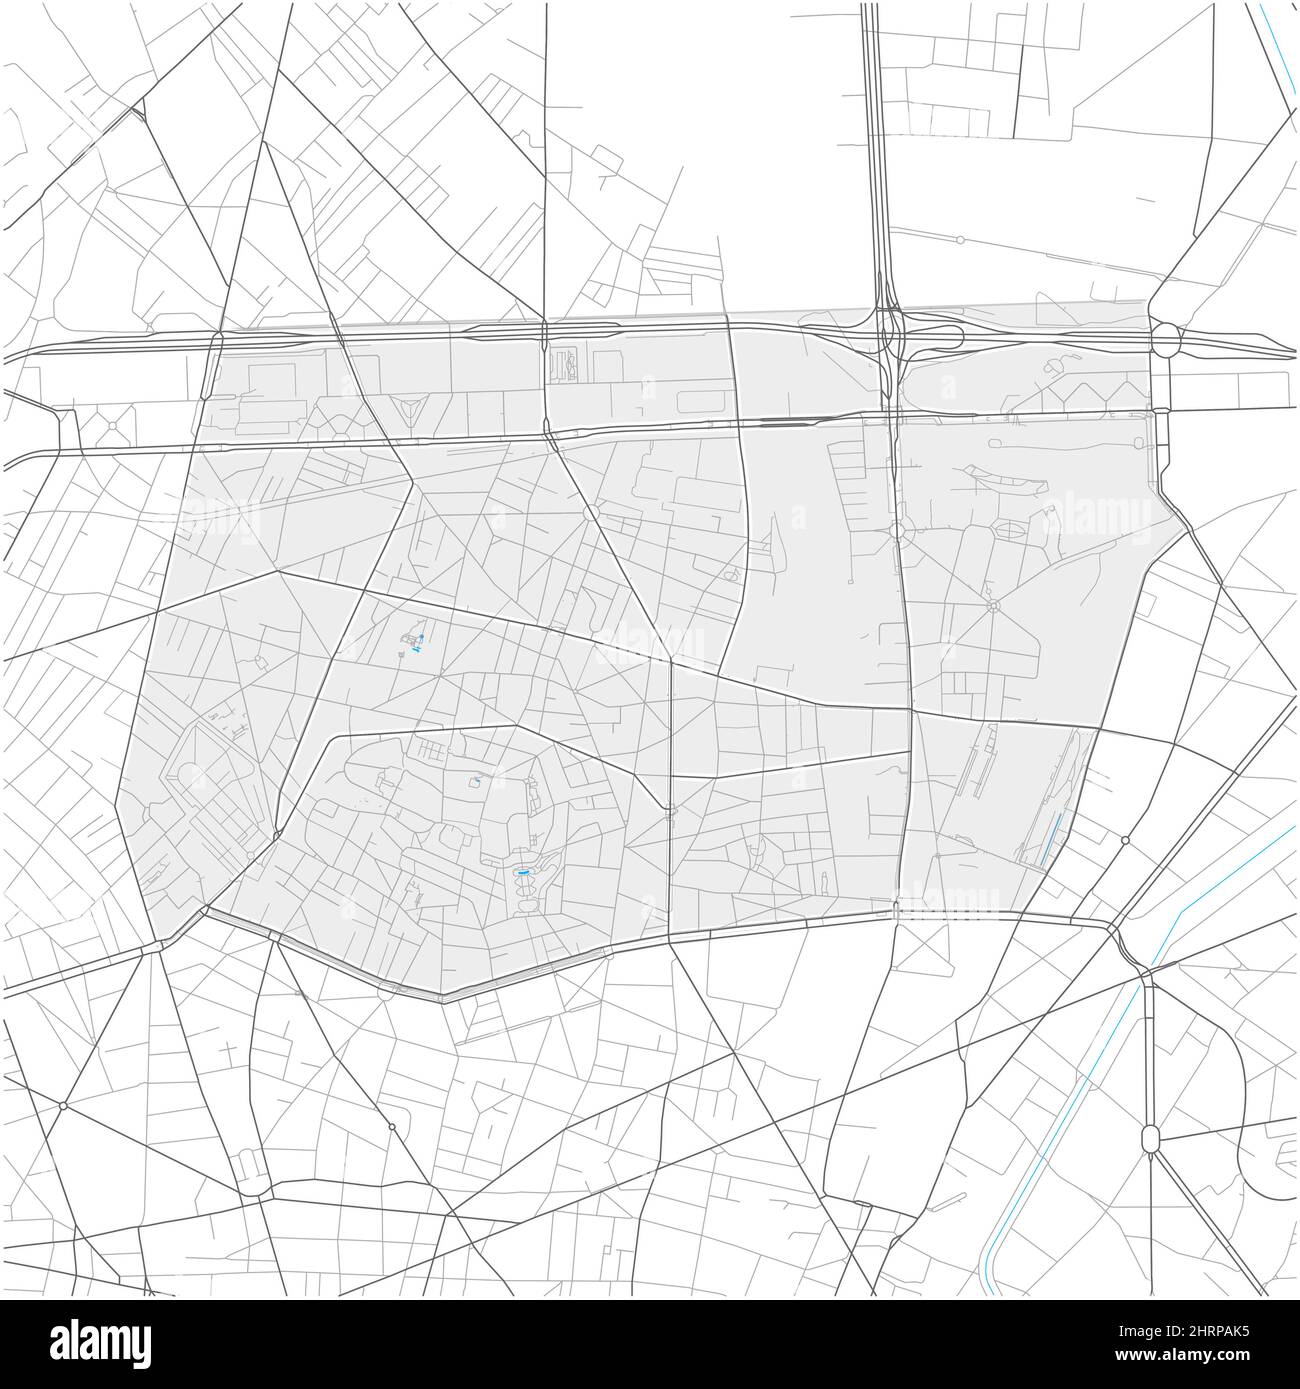 18. Arrondissement, Paris, FRANKREICH, detailreiche Vektorkarte mit Stadtgrenzen und bearbeitbaren Pfaden. Weiße Umrisse für Hauptstraßen. Viele kleinere Wege. Stock Vektor